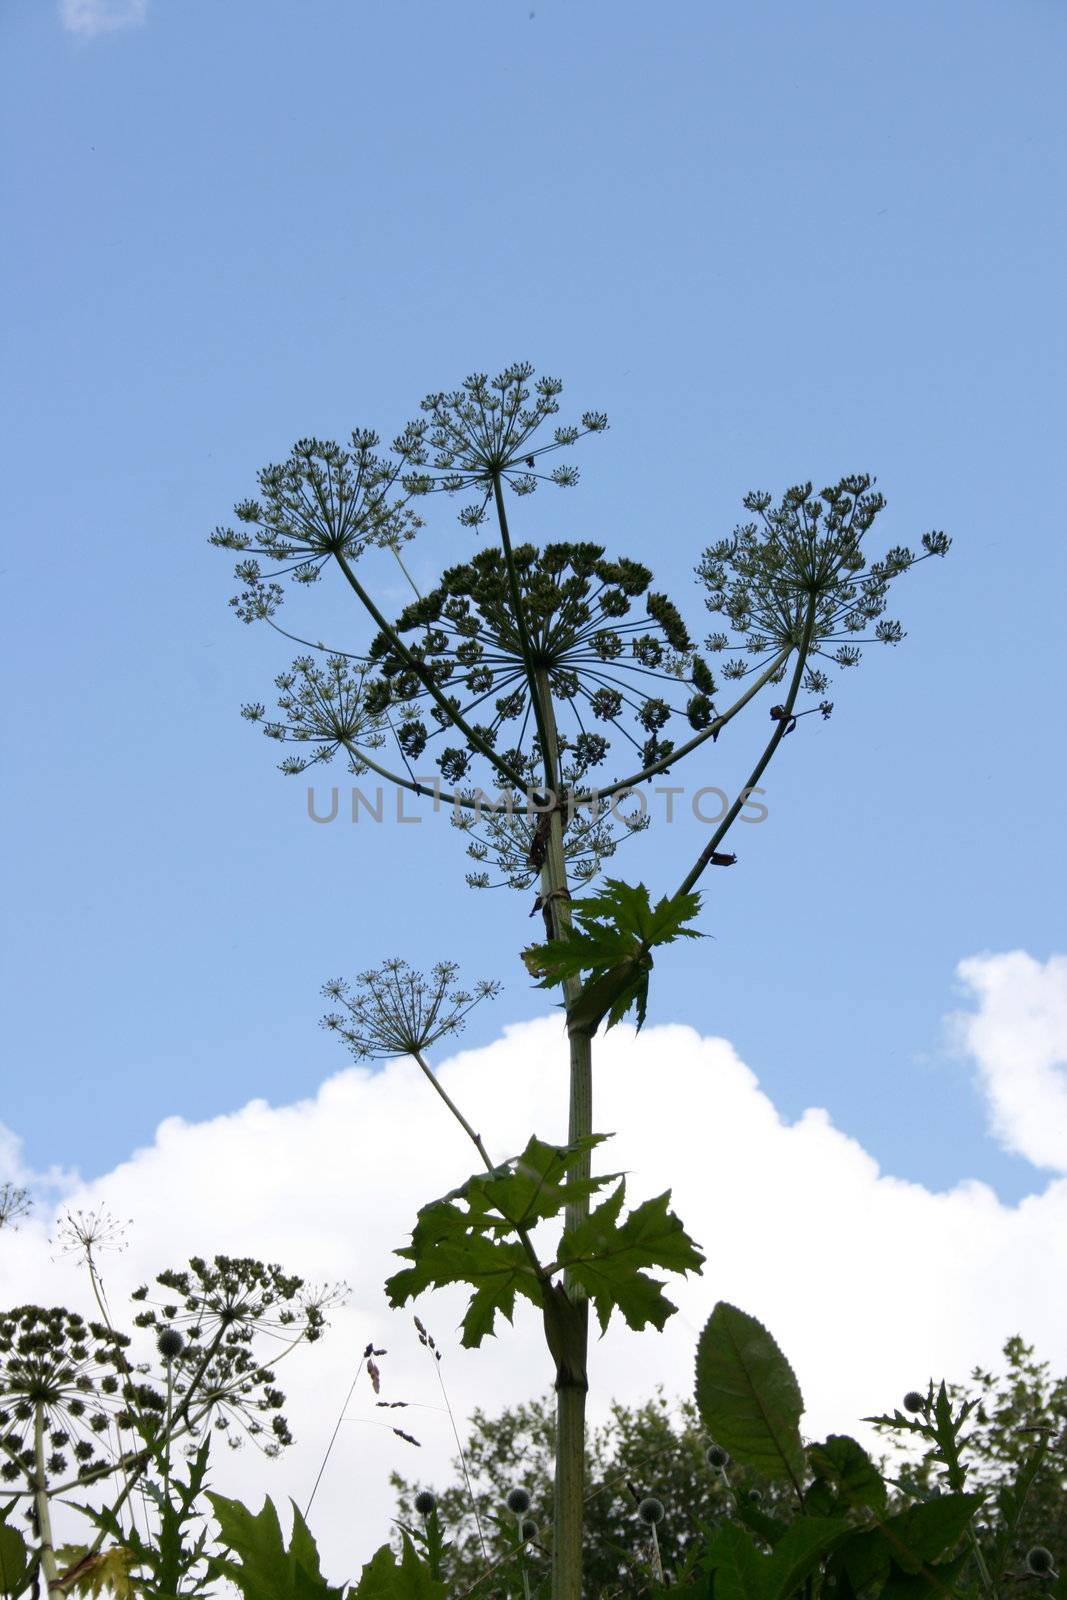 Herkulesstaude (Heracleum mantegazzianum)gegen blauen himmel fotografiert	
Giant hogweed (Heracleum mantegazzianum) against blue sky photographs